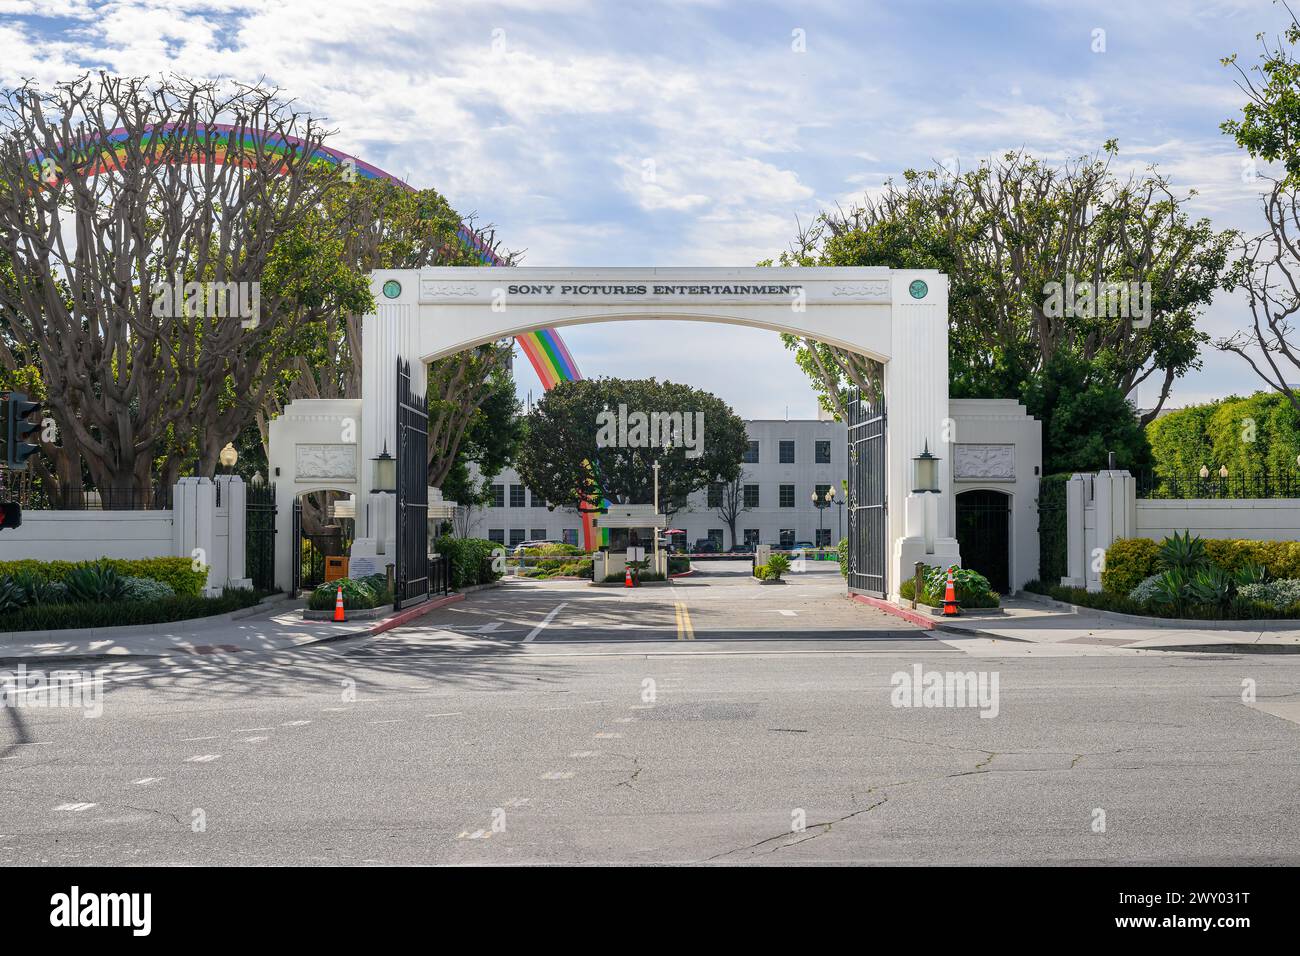 L'arche d'entrée de Sony Pictures Entertainment avec un arc-en-ciel coloré en arrière-plan Banque D'Images